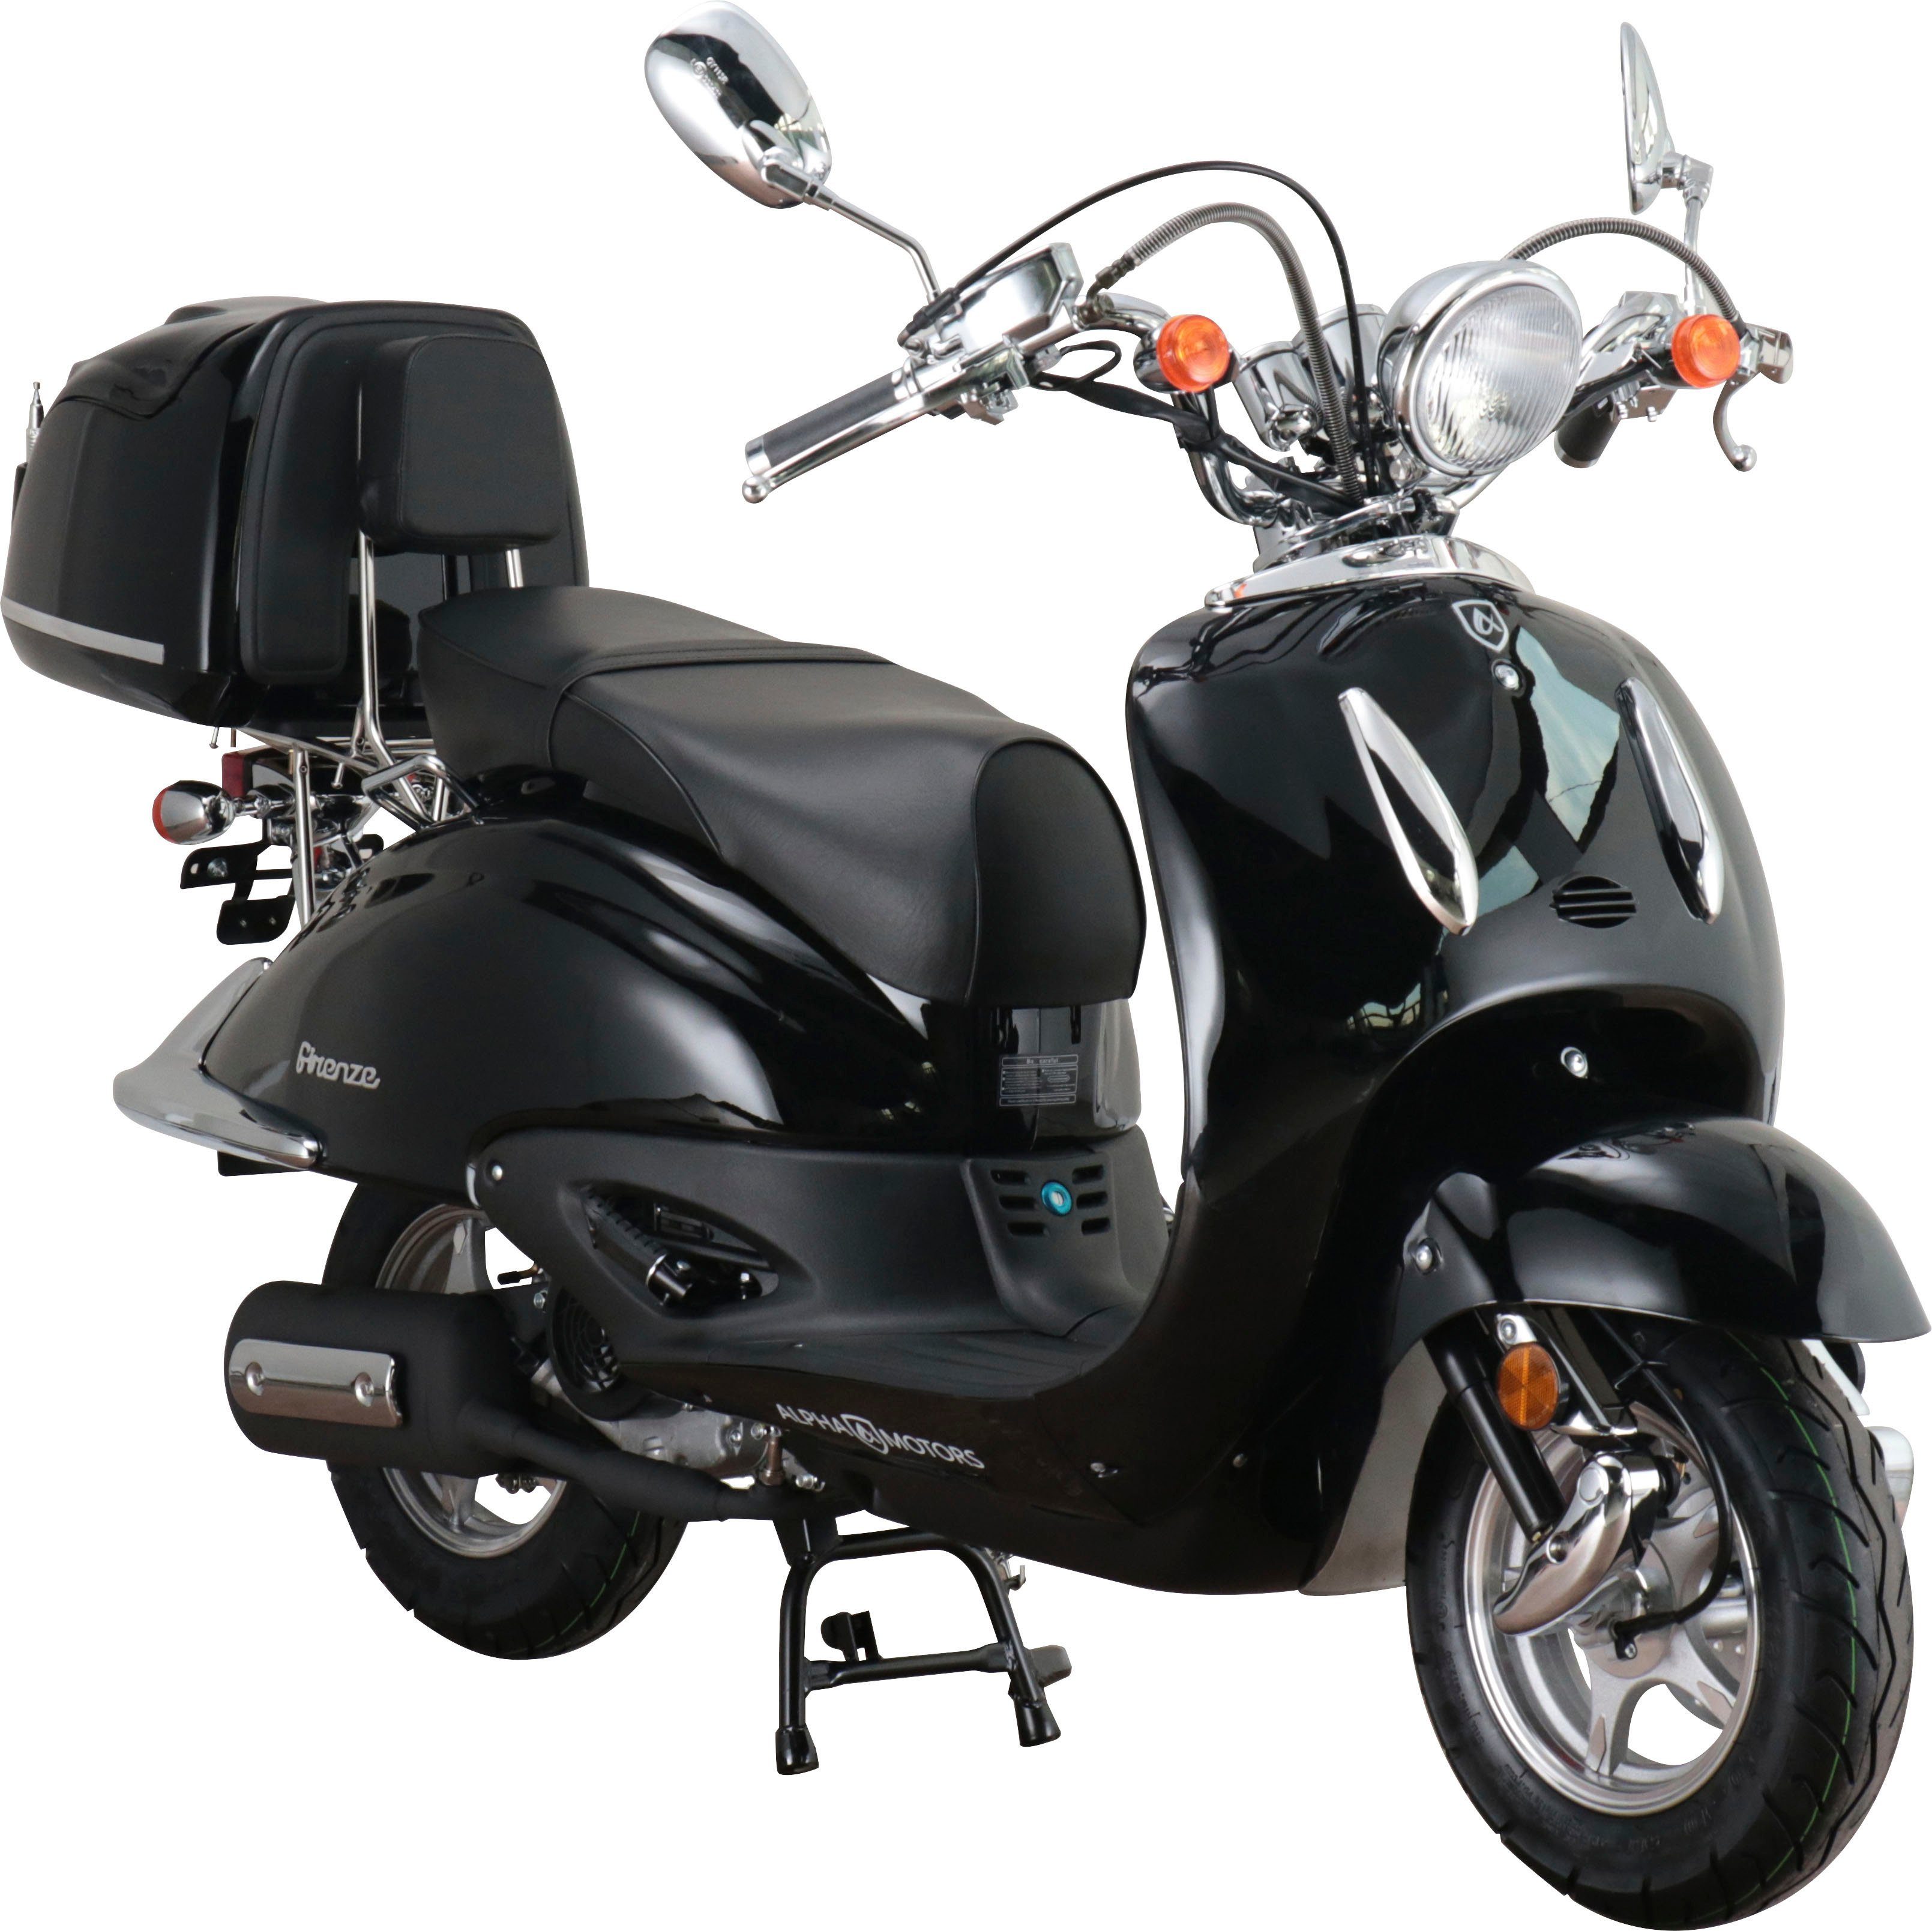 Motorroller 125 inkl. Firenze, Euro Topcase Motors 5, km/h, 85 Alpha Retro ccm,